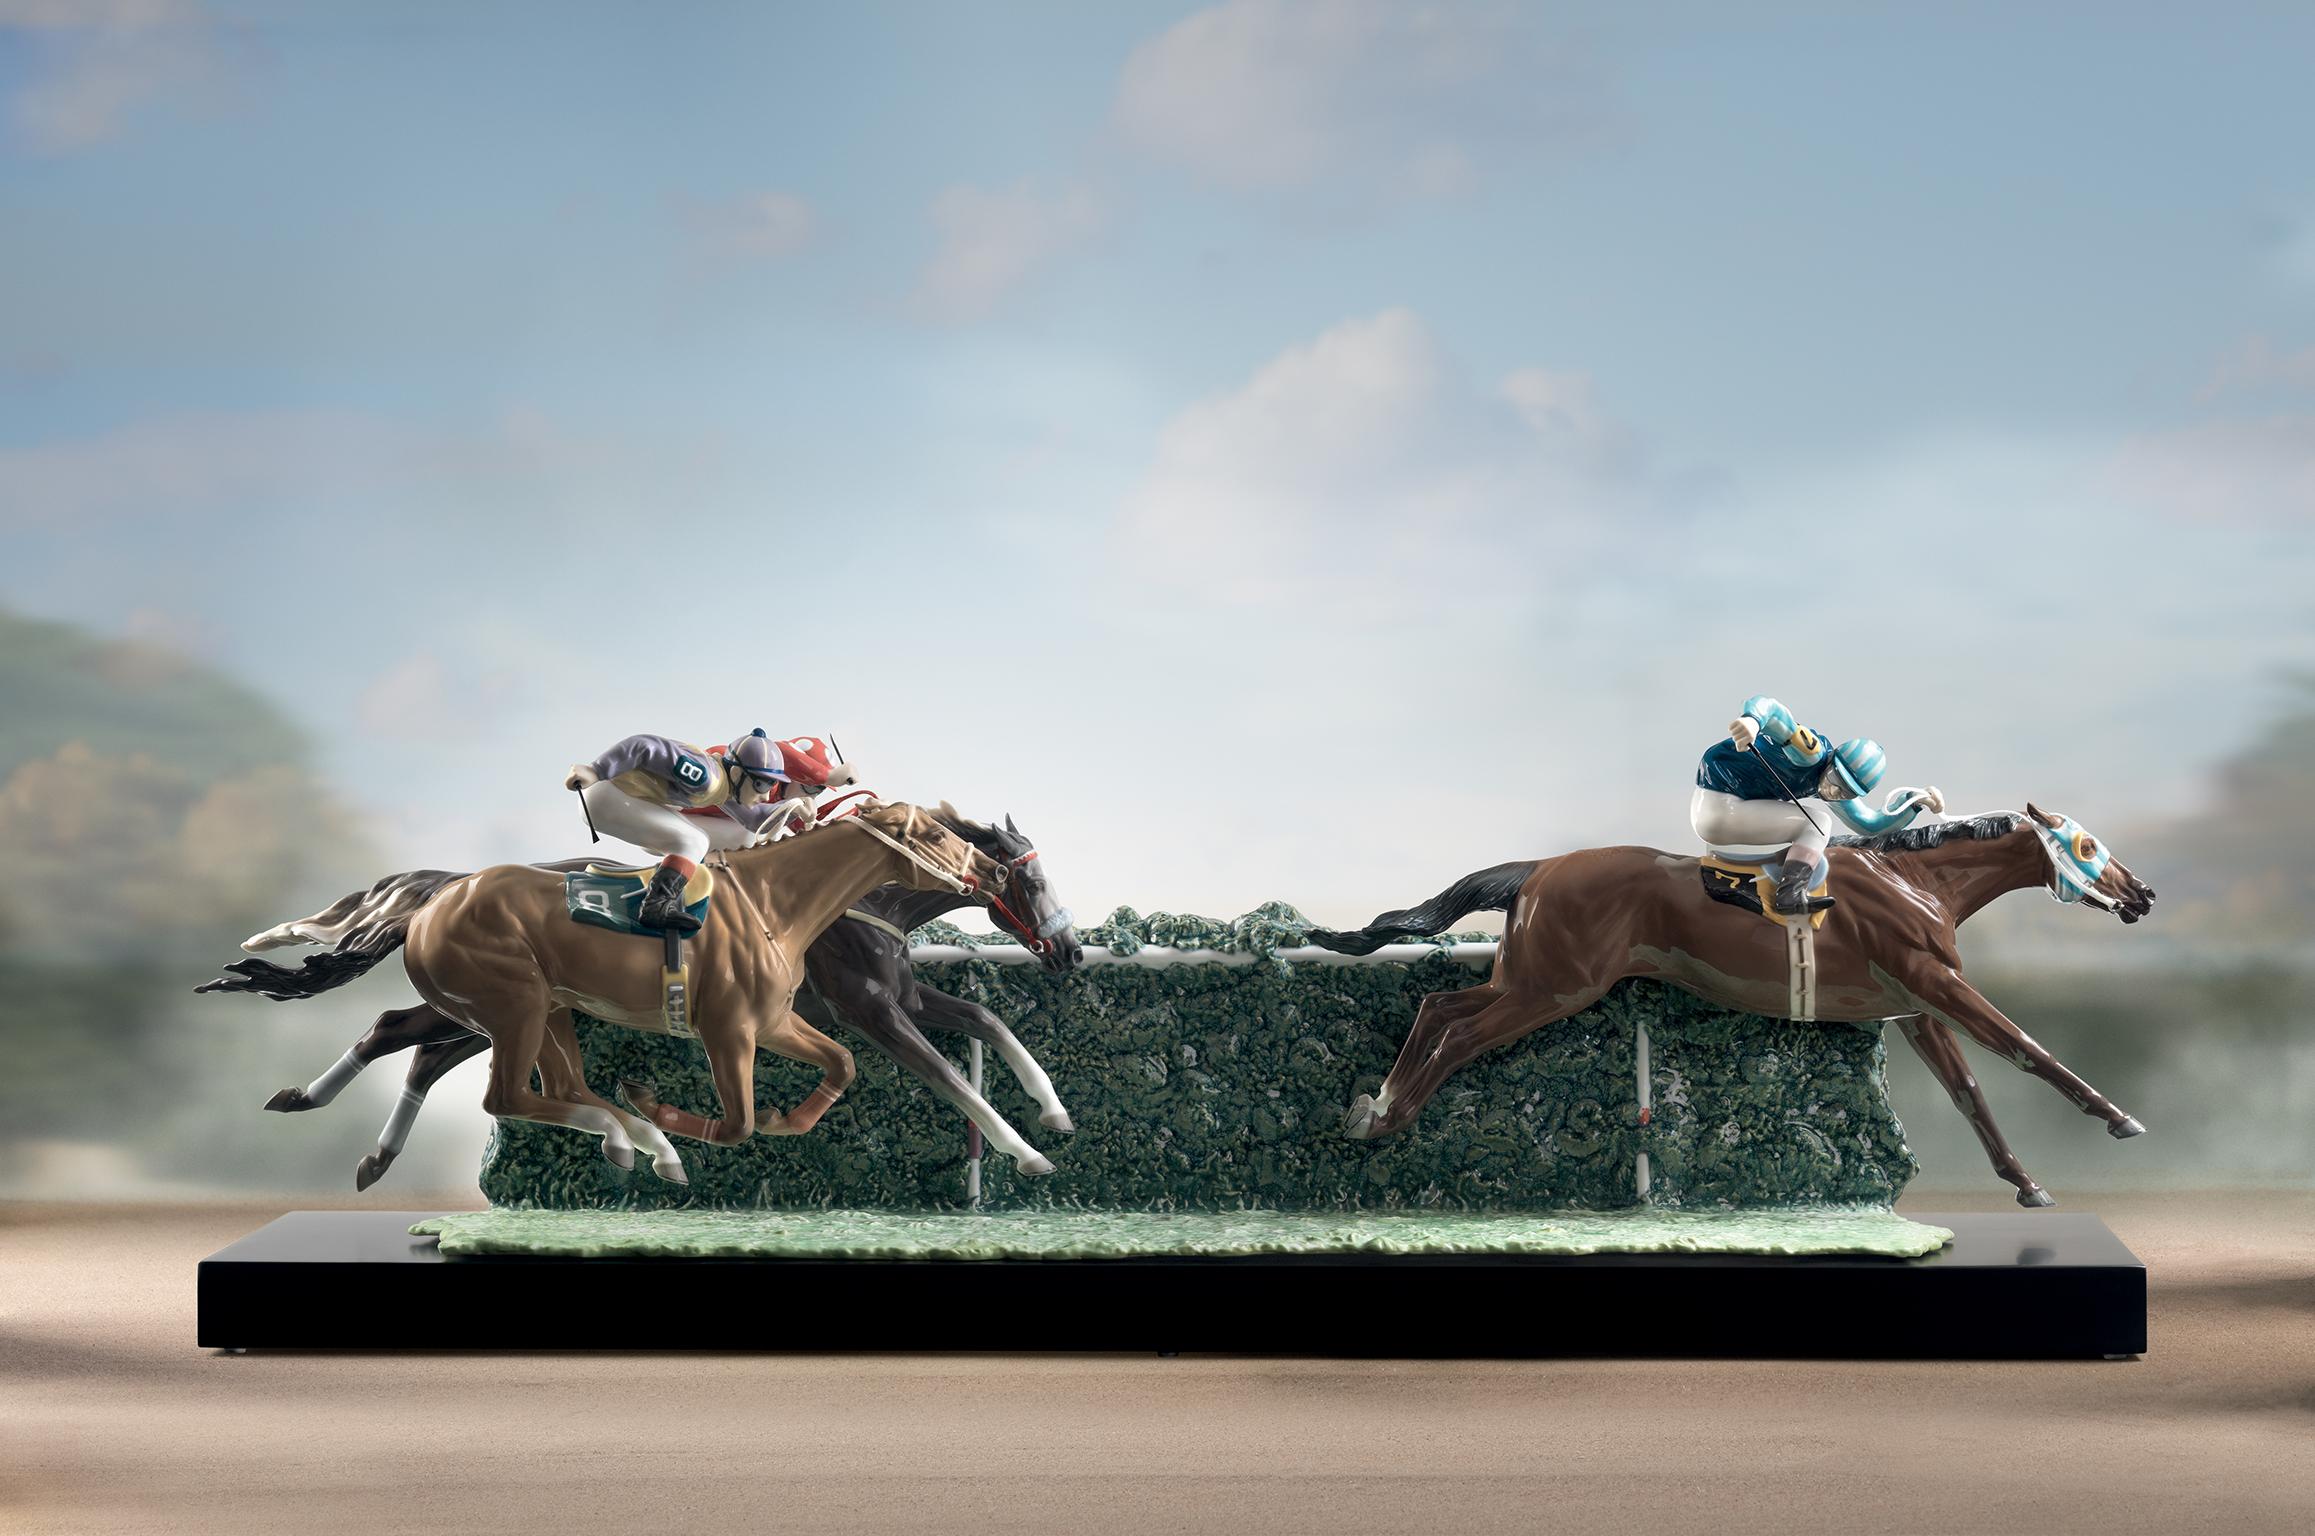 Sculpture en porcelaine brillante de la série limitée Racing in the racetrack représentée par trois chevaux avec jockey de couleurs rouge et bleu intenses, combinaison de différentes glaçures. Base incluse.
 